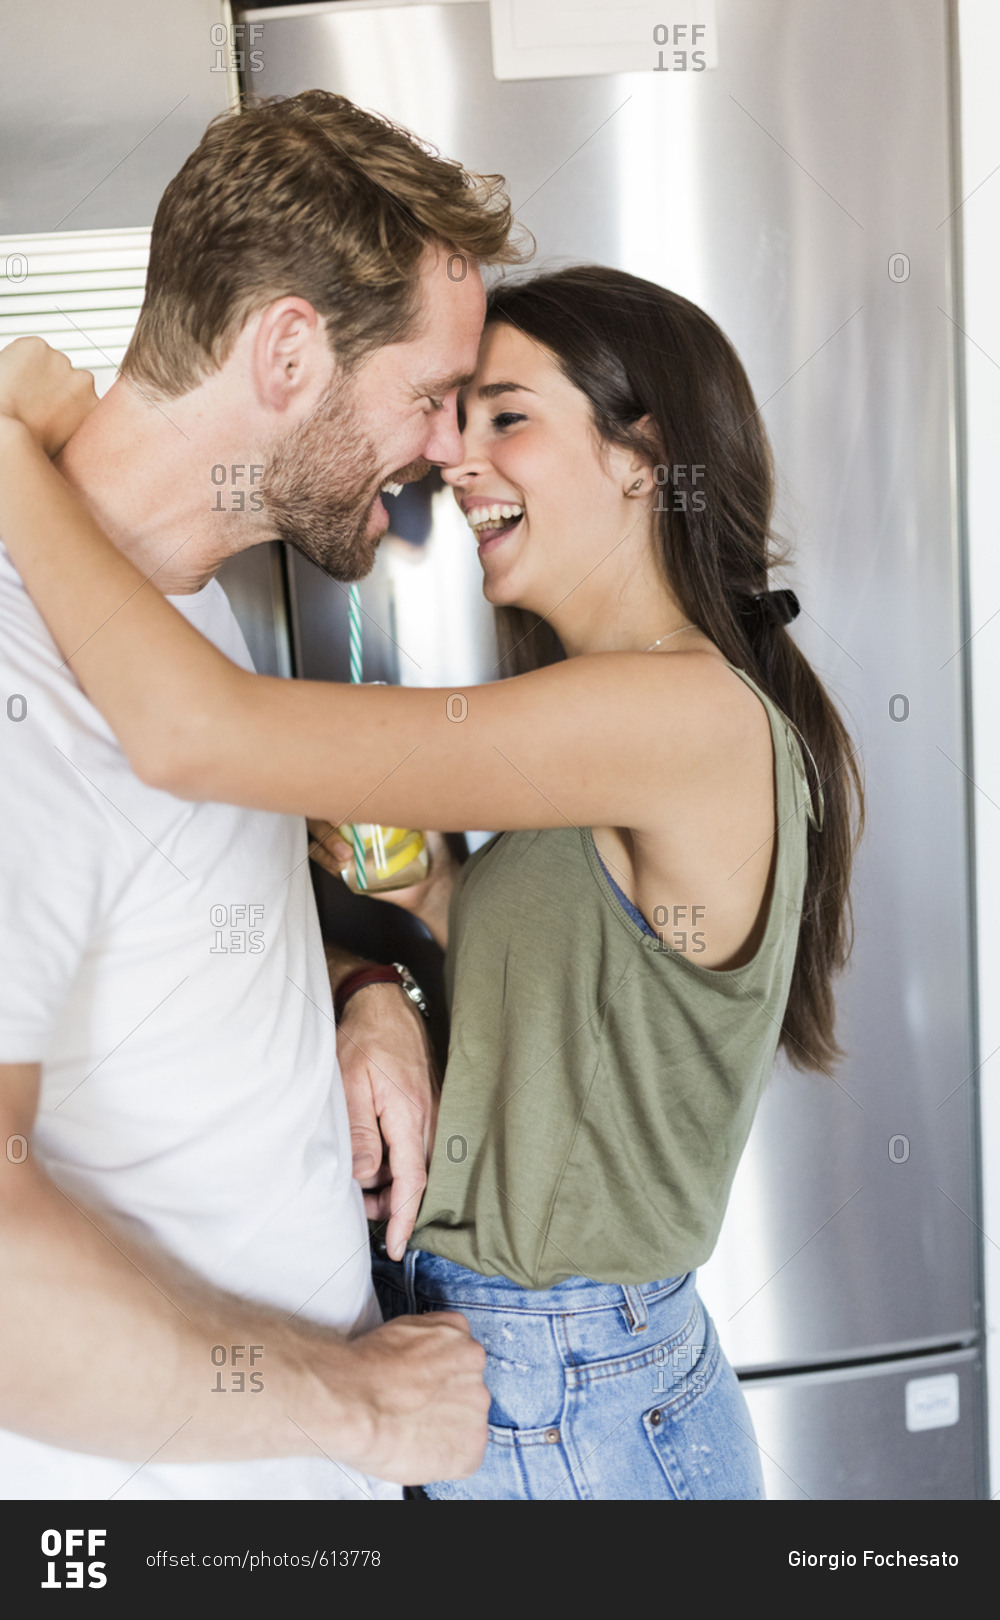 Couple smiling by fridge